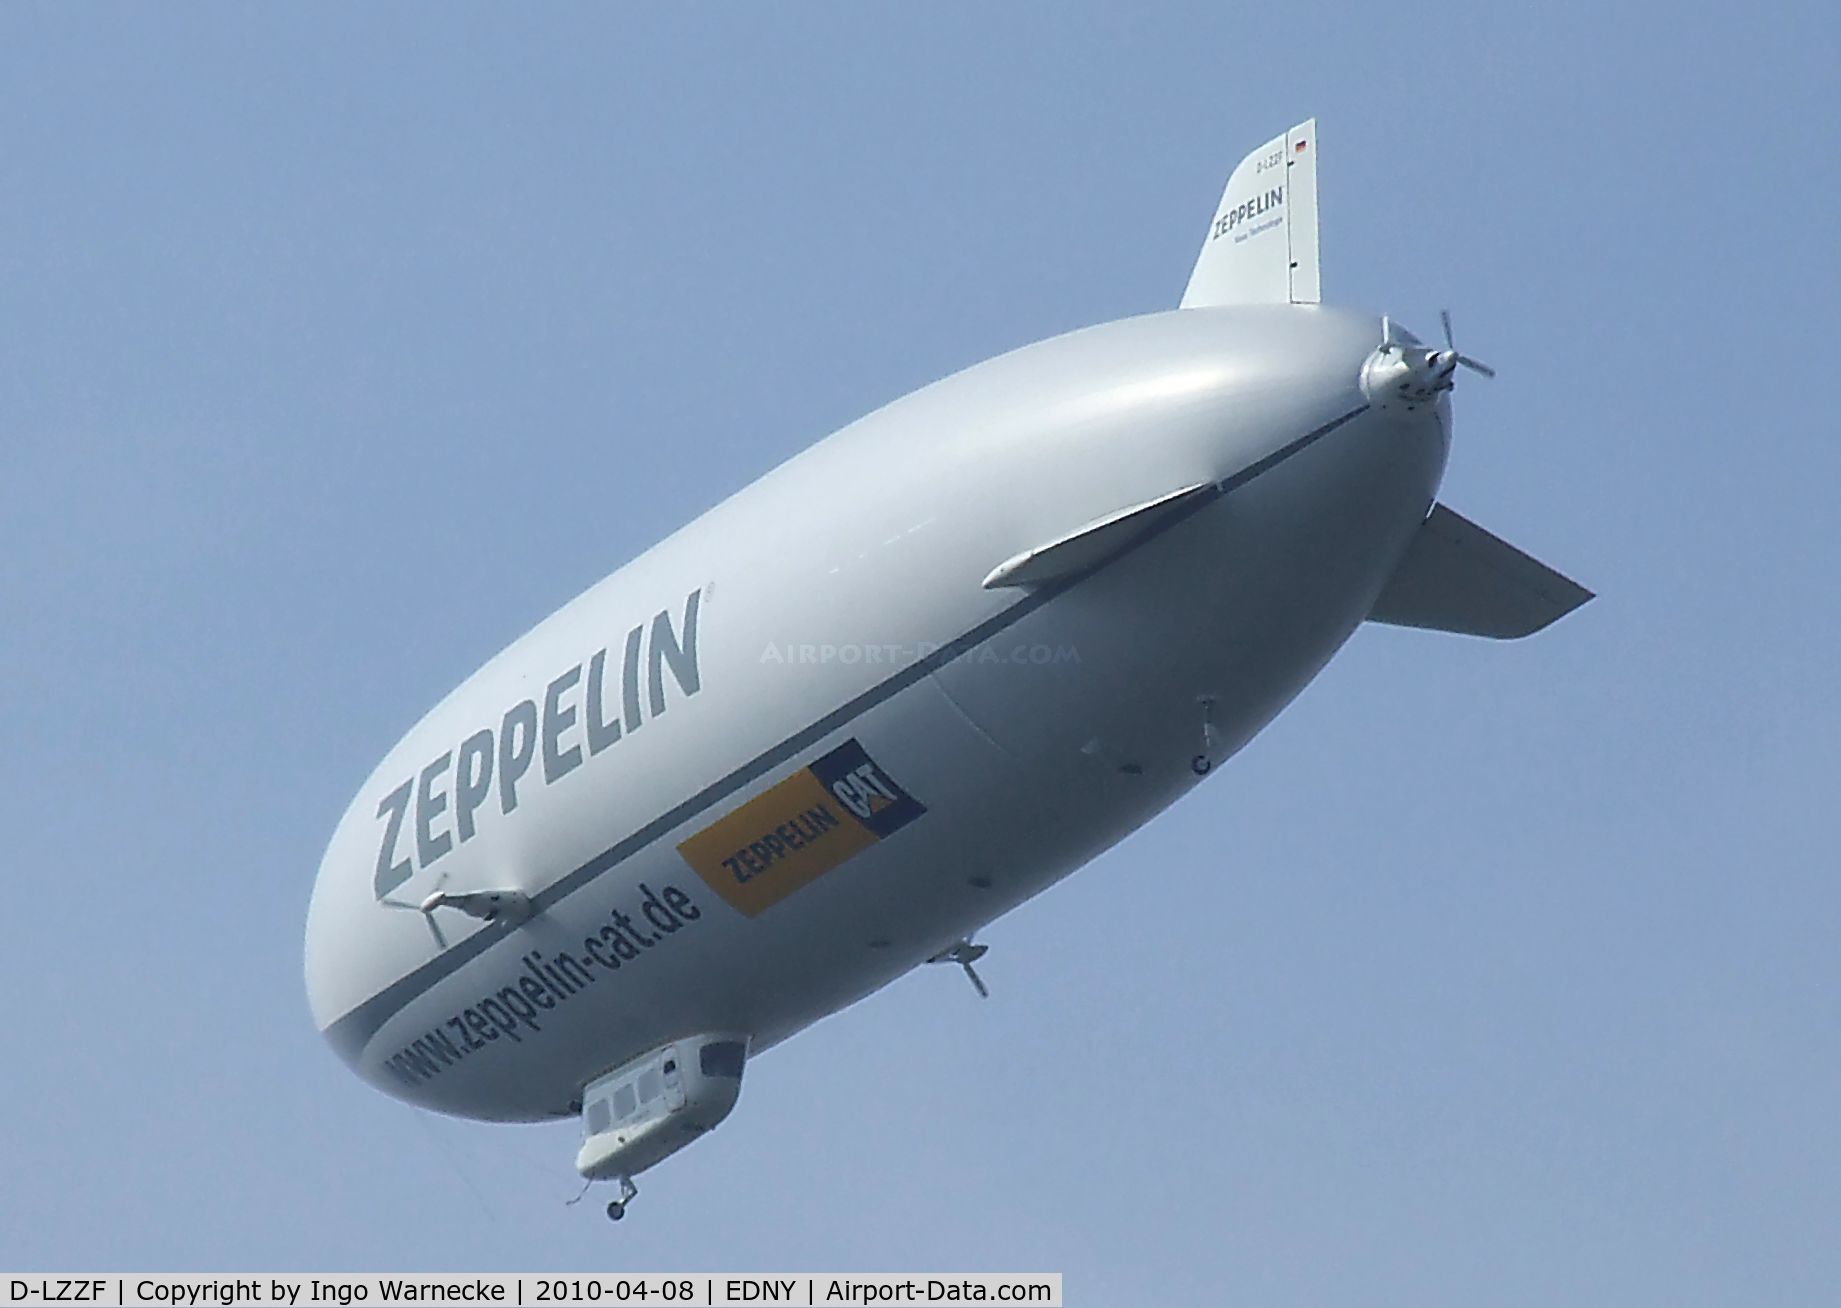 D-LZZF, 1998 Zeppelin NT07 C/N 3, Zeppelin NT LZ-N07 at the AERO 2010, Friedrichshafen